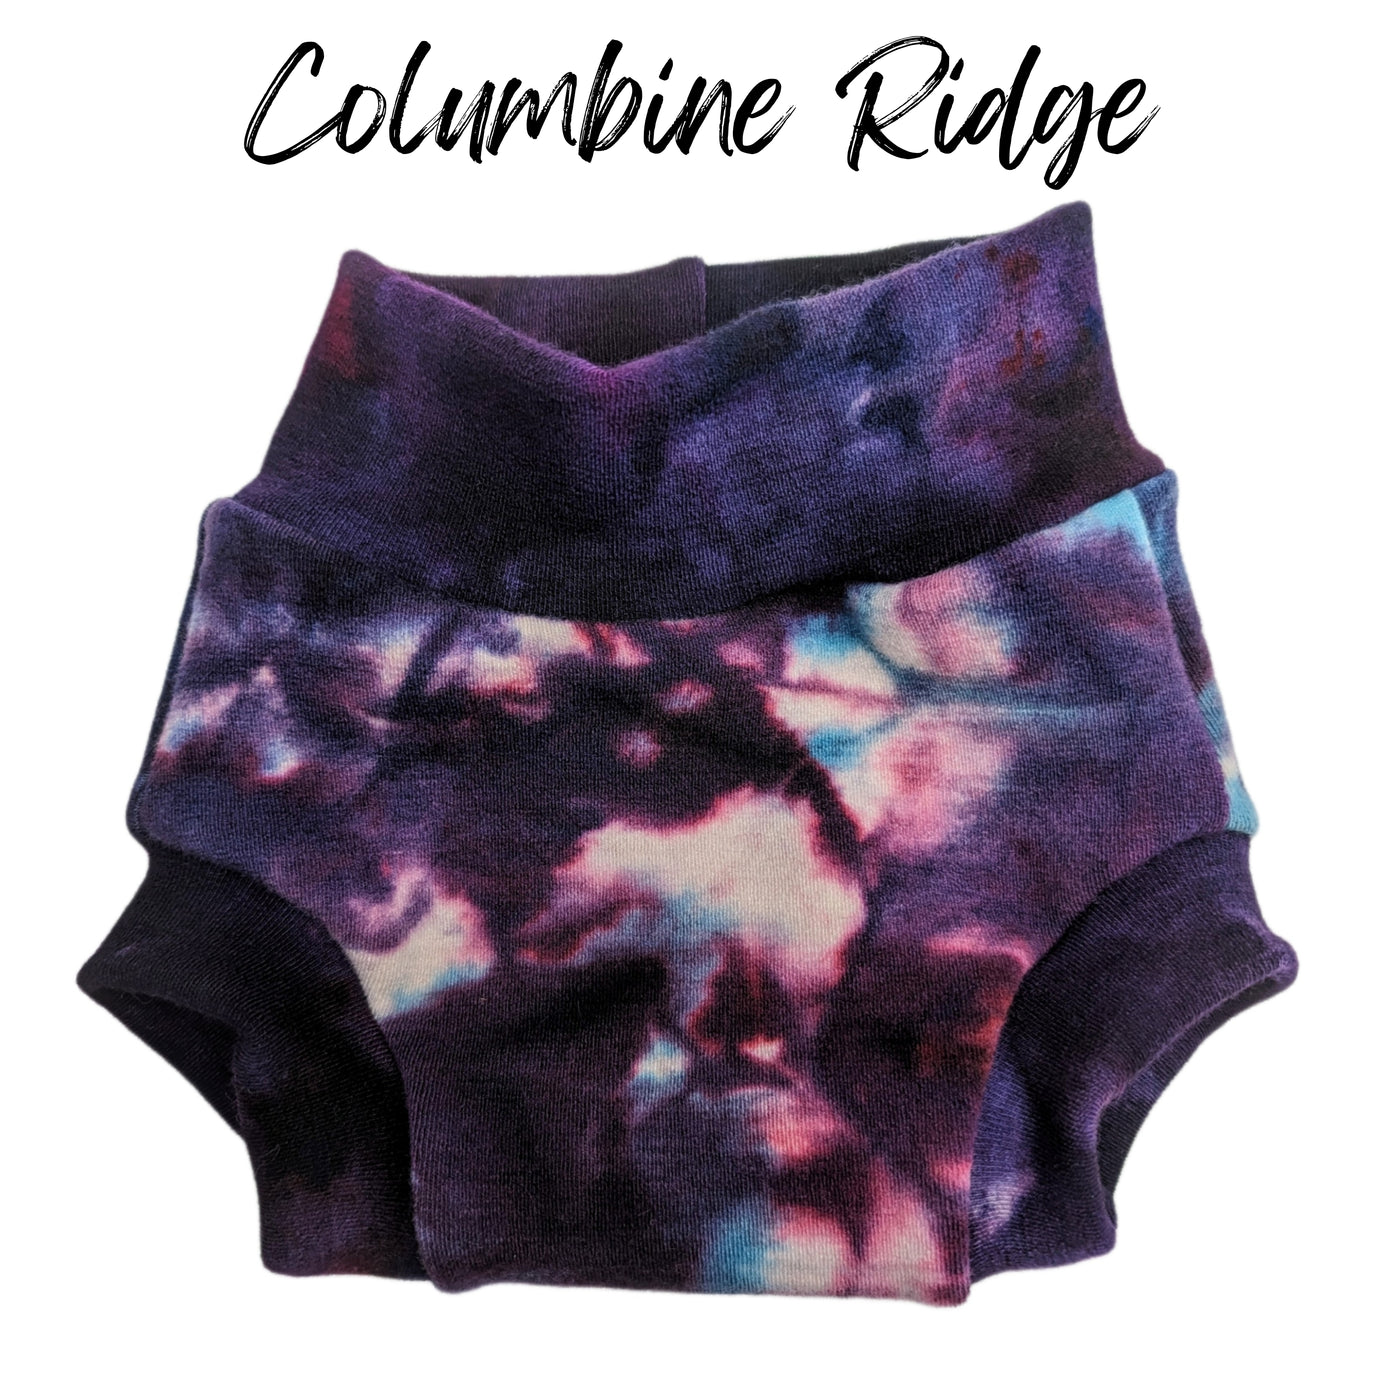 Merino Wool Diaper Cover | Columbine Ridge